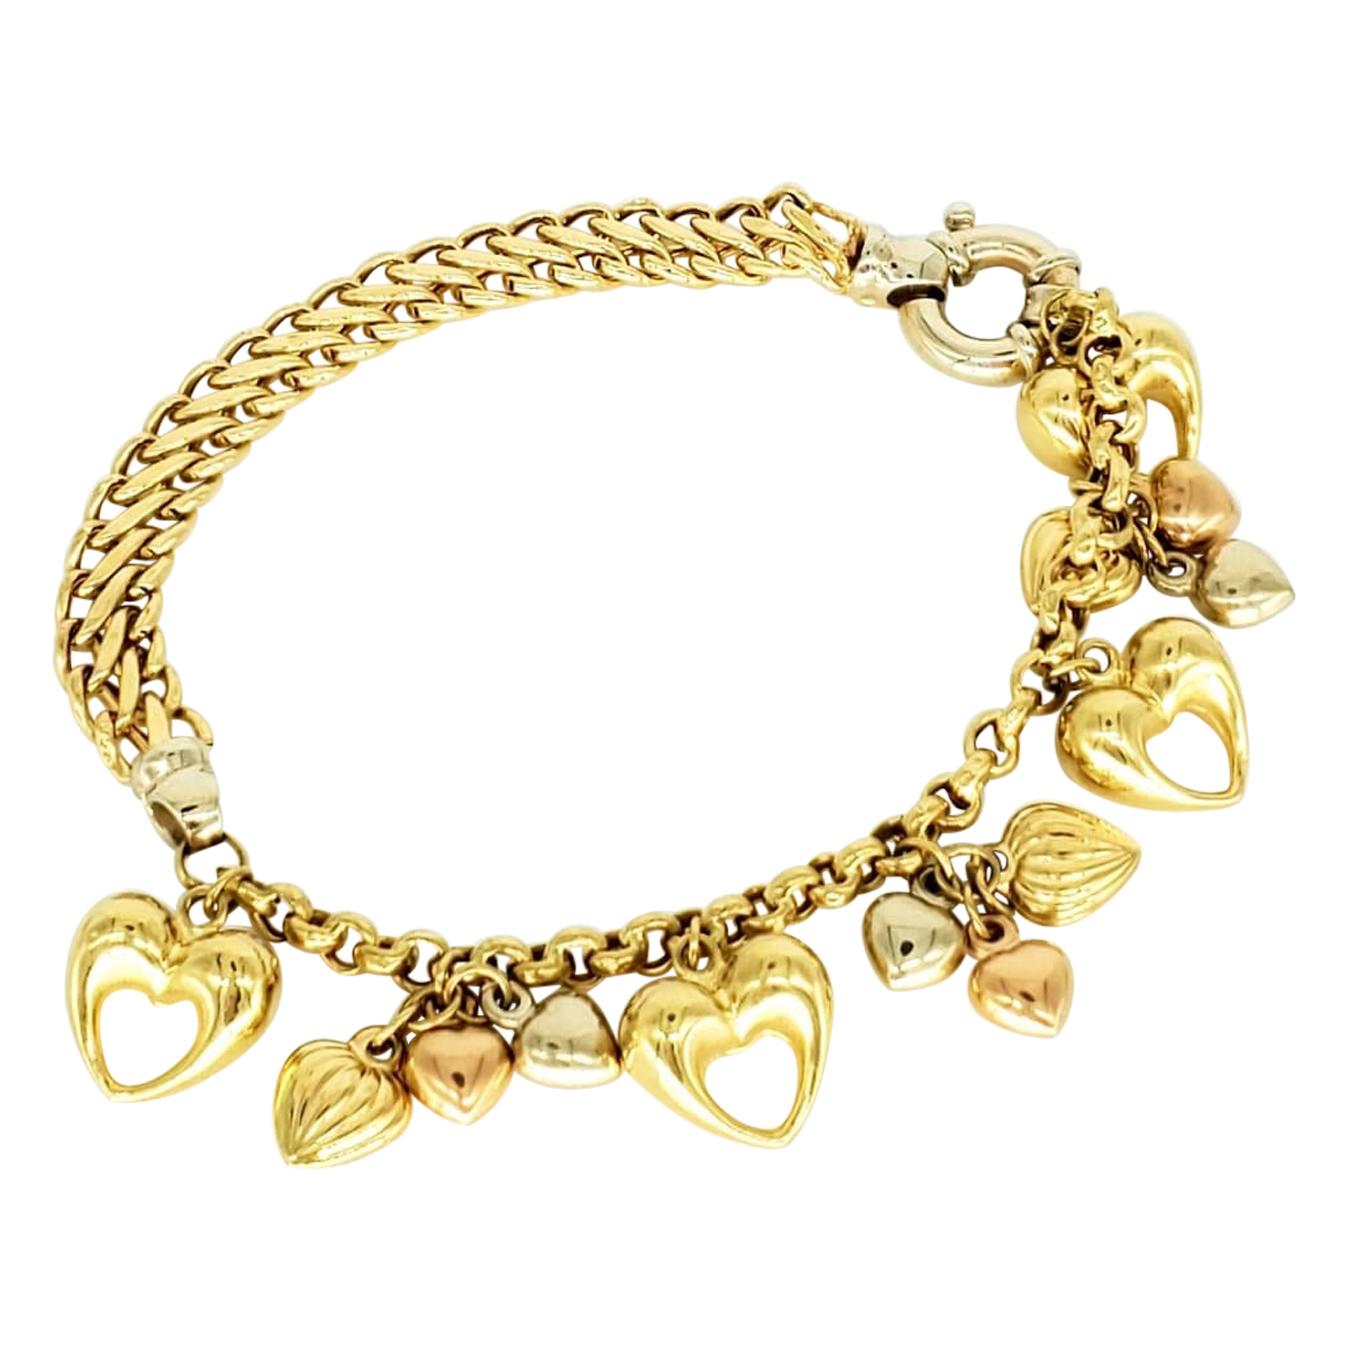 Vintage Kingdom of Hearts 18 Karat Gold Charm Bracelet For Sale